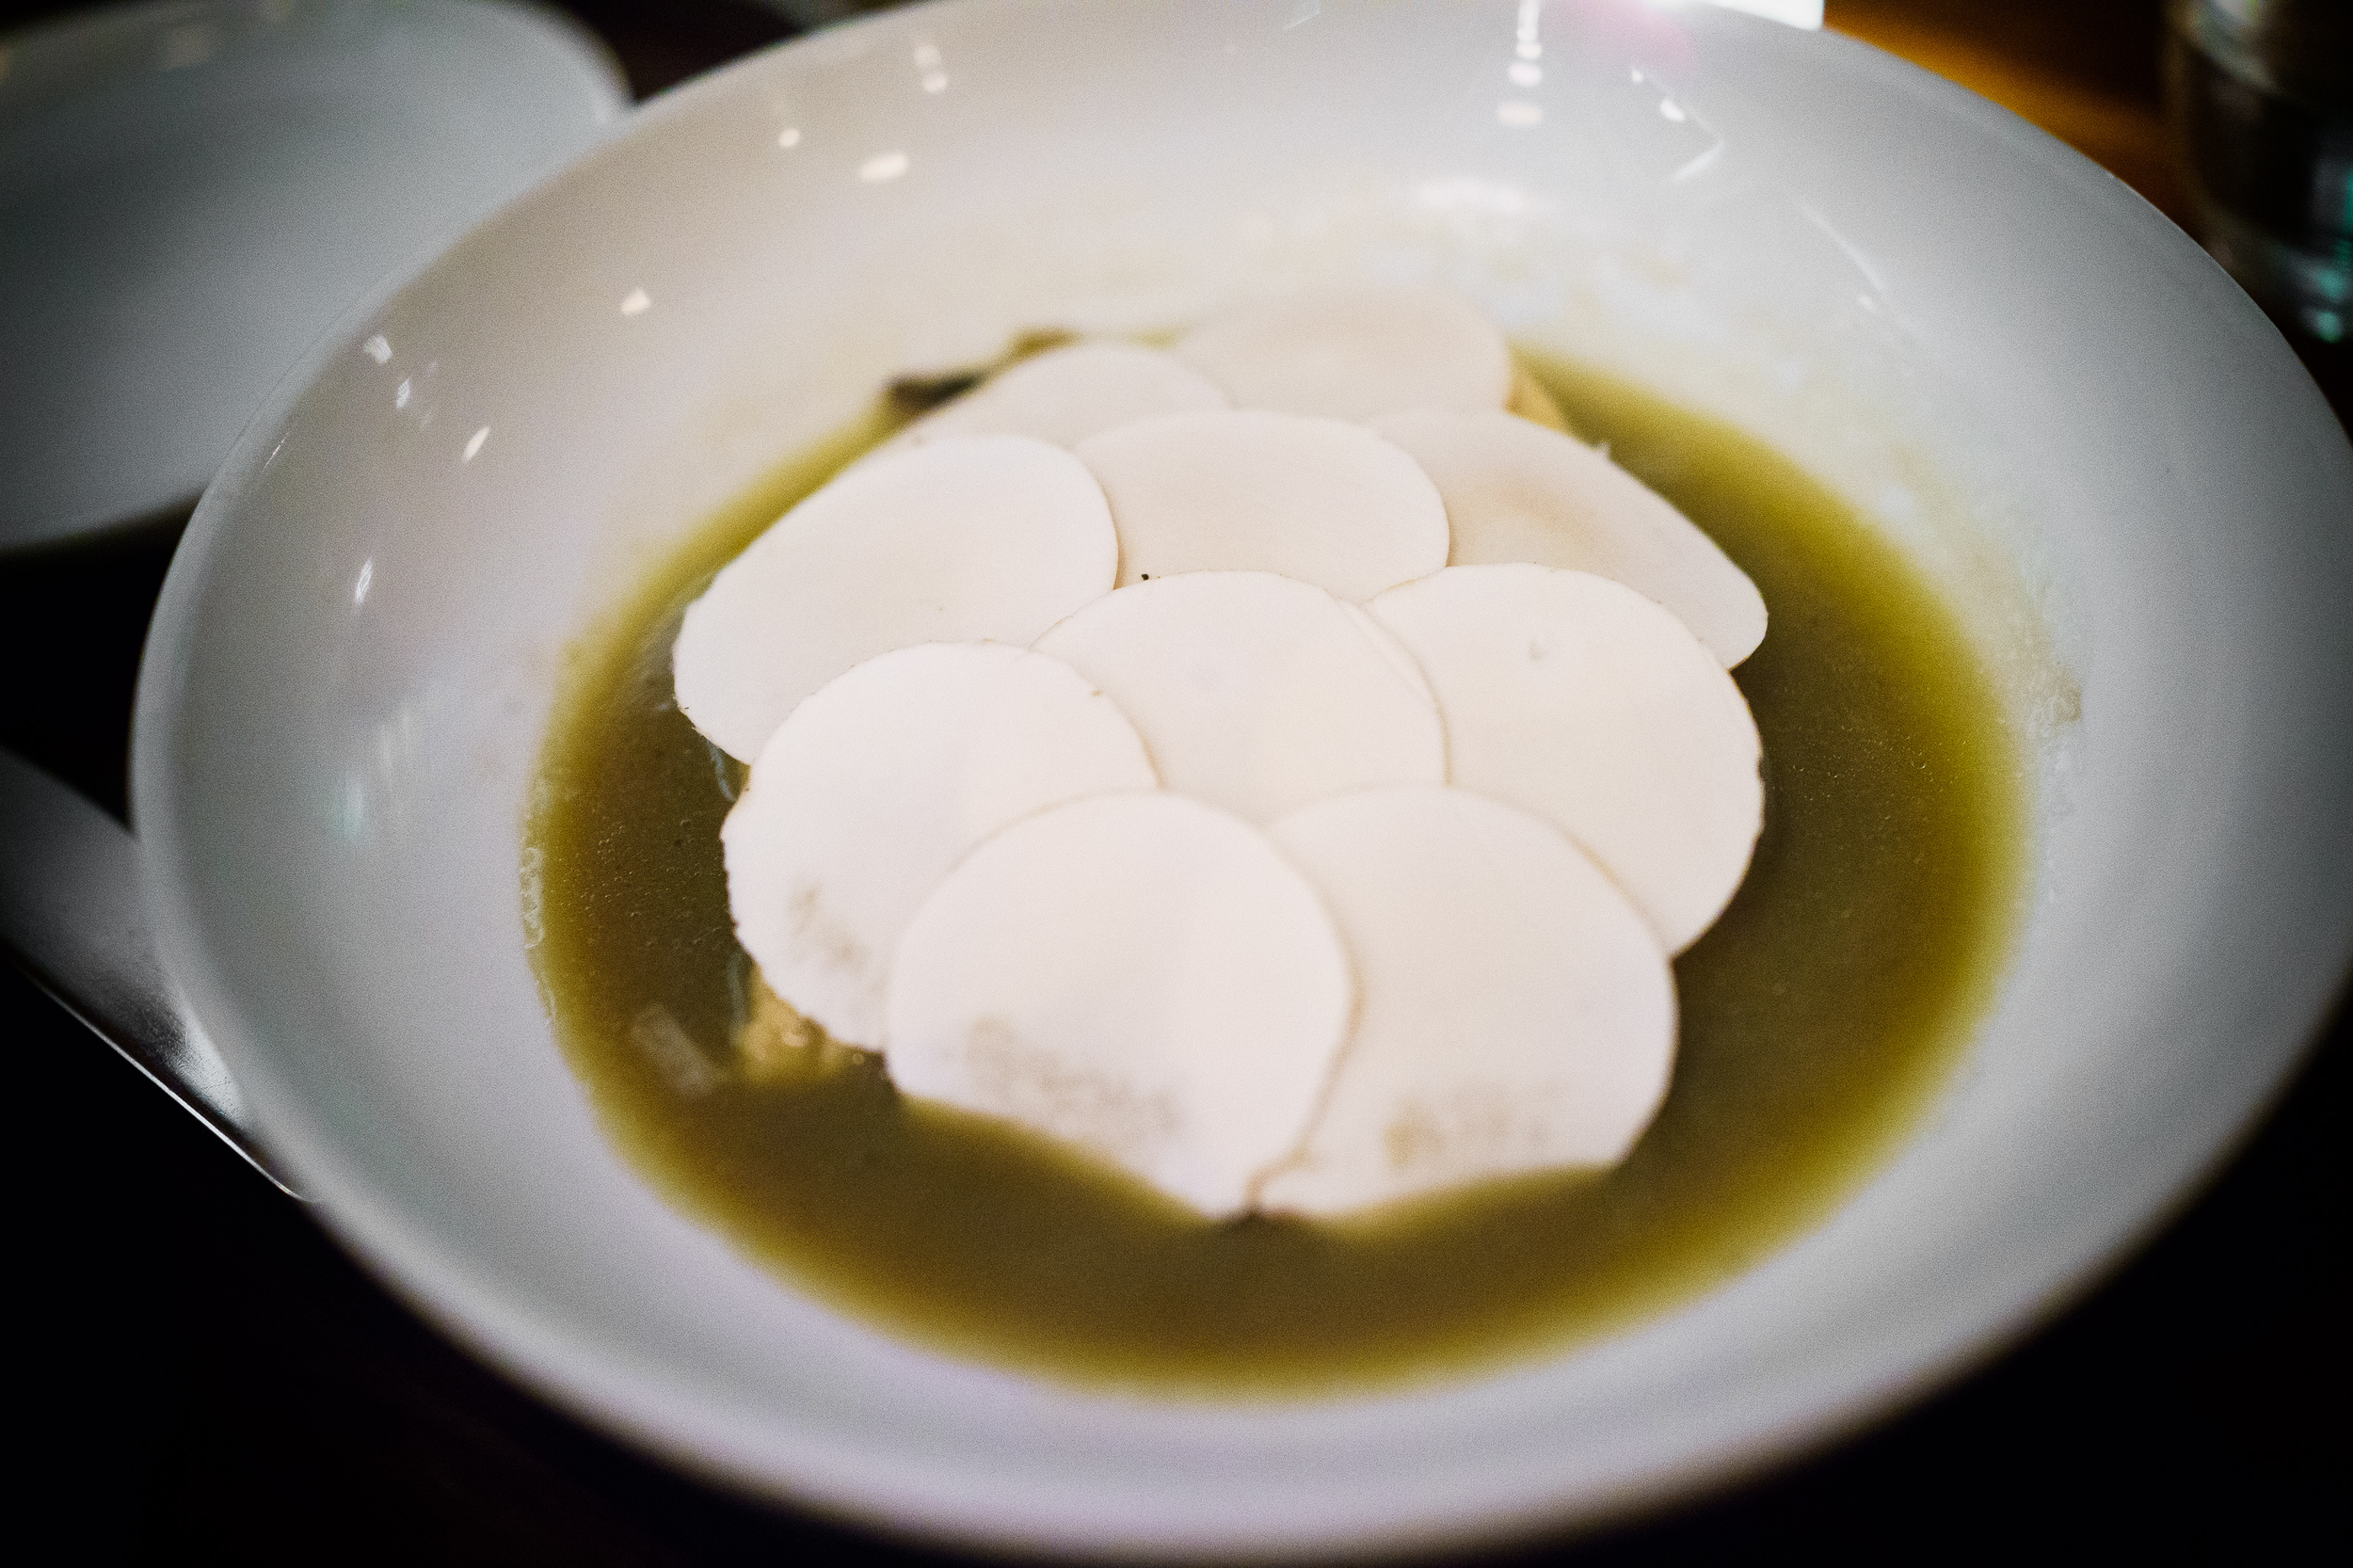 Ricotta dumplings with mushrooms and pecorino sardo ($25)